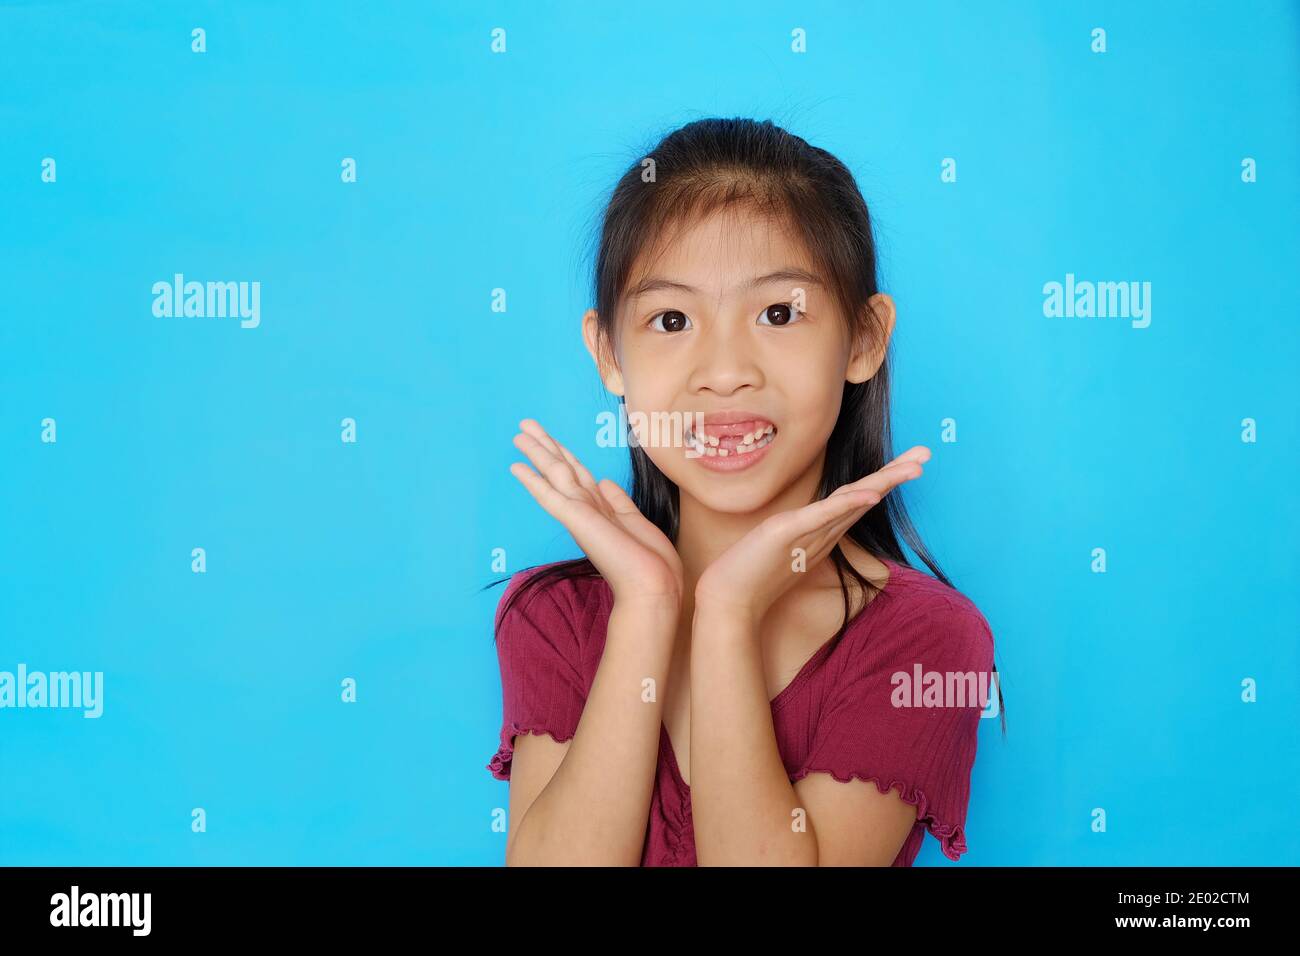 Una ragazza asiatica carina e felice con i denti anteriori mancanti, che si pone con le mani accanto al mento, con fondo azzurro chiaro e chiaro. Foto Stock